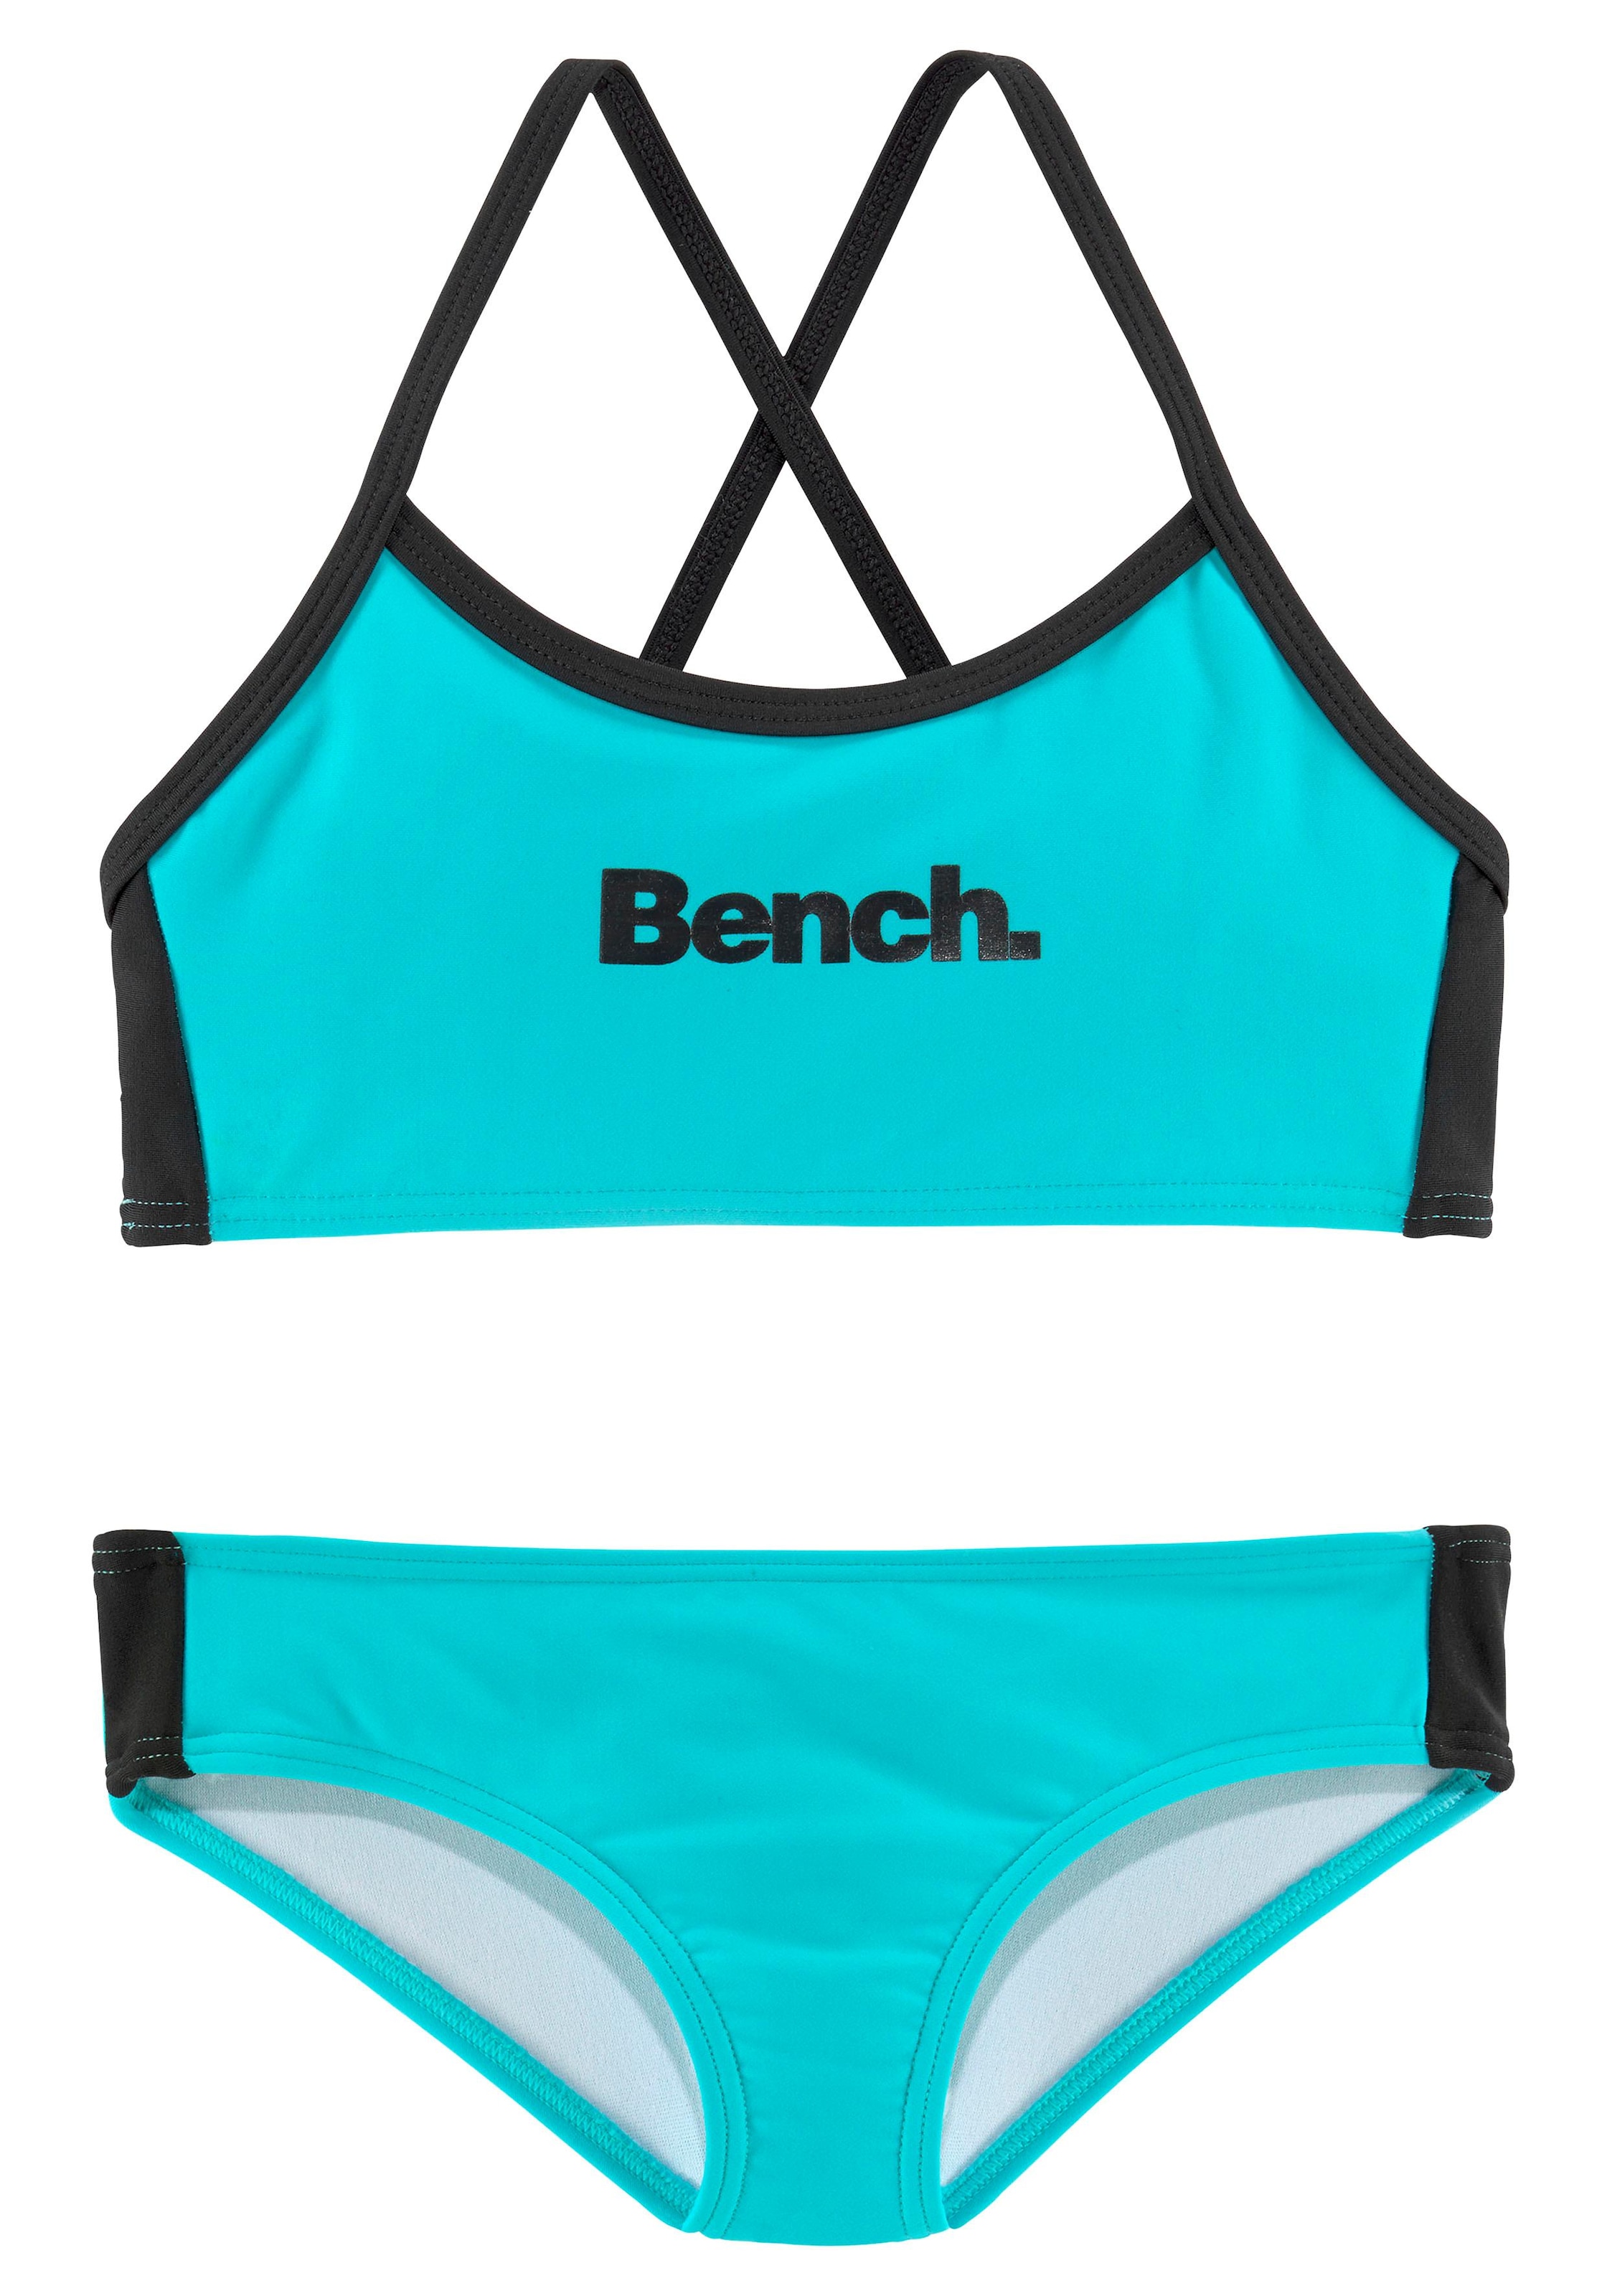 mit Bench. | Bustier-Bikini, Friday gekreuzten Trägern BAUR Black